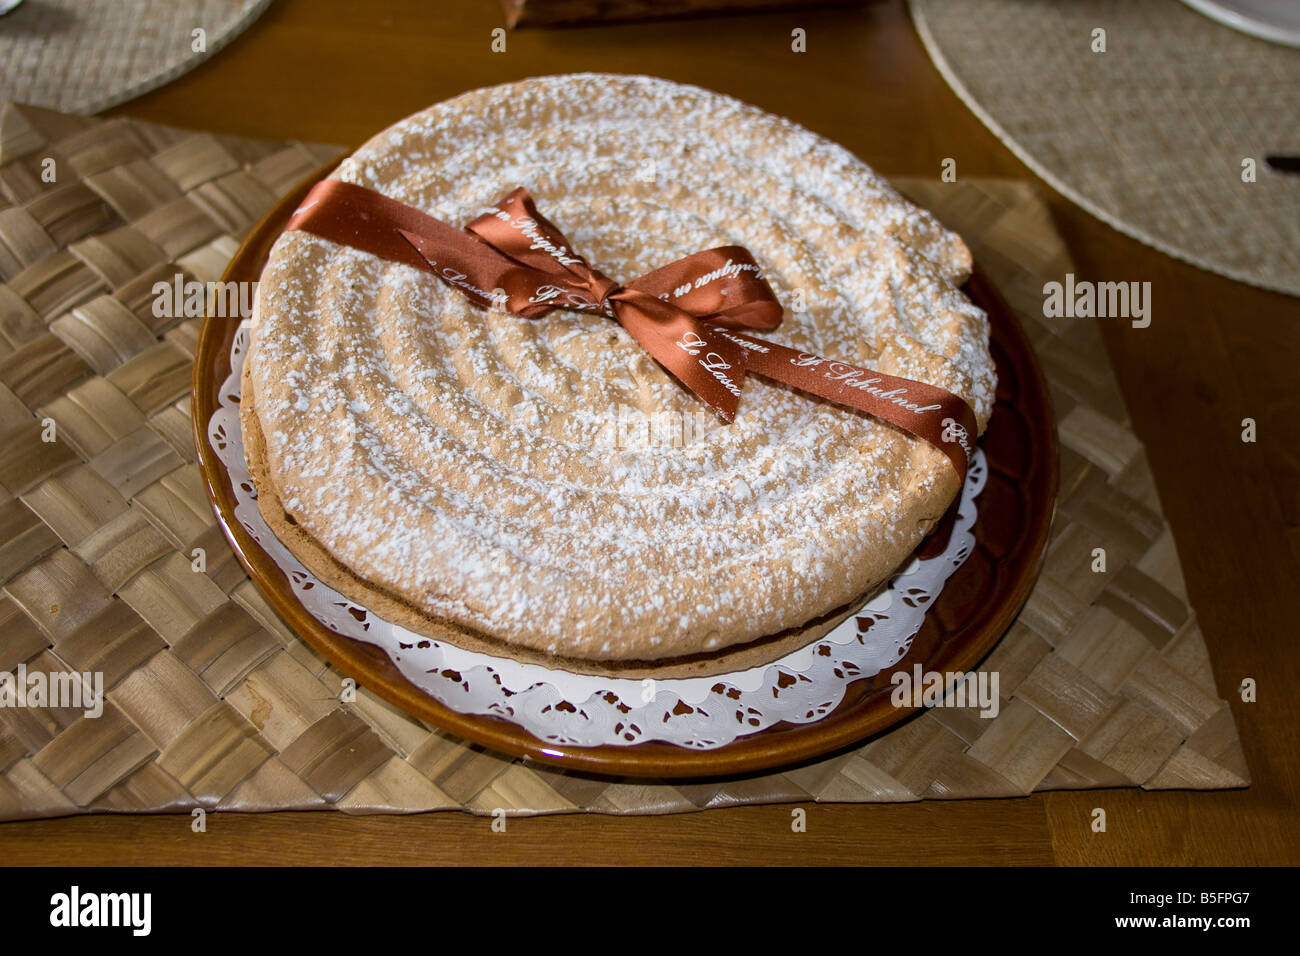 Lascaux cake speciality Montignac near lascaux caves, Dordogne France.  Horizontal. 87165 Gateau Lascaux Stock Photo - Alamy